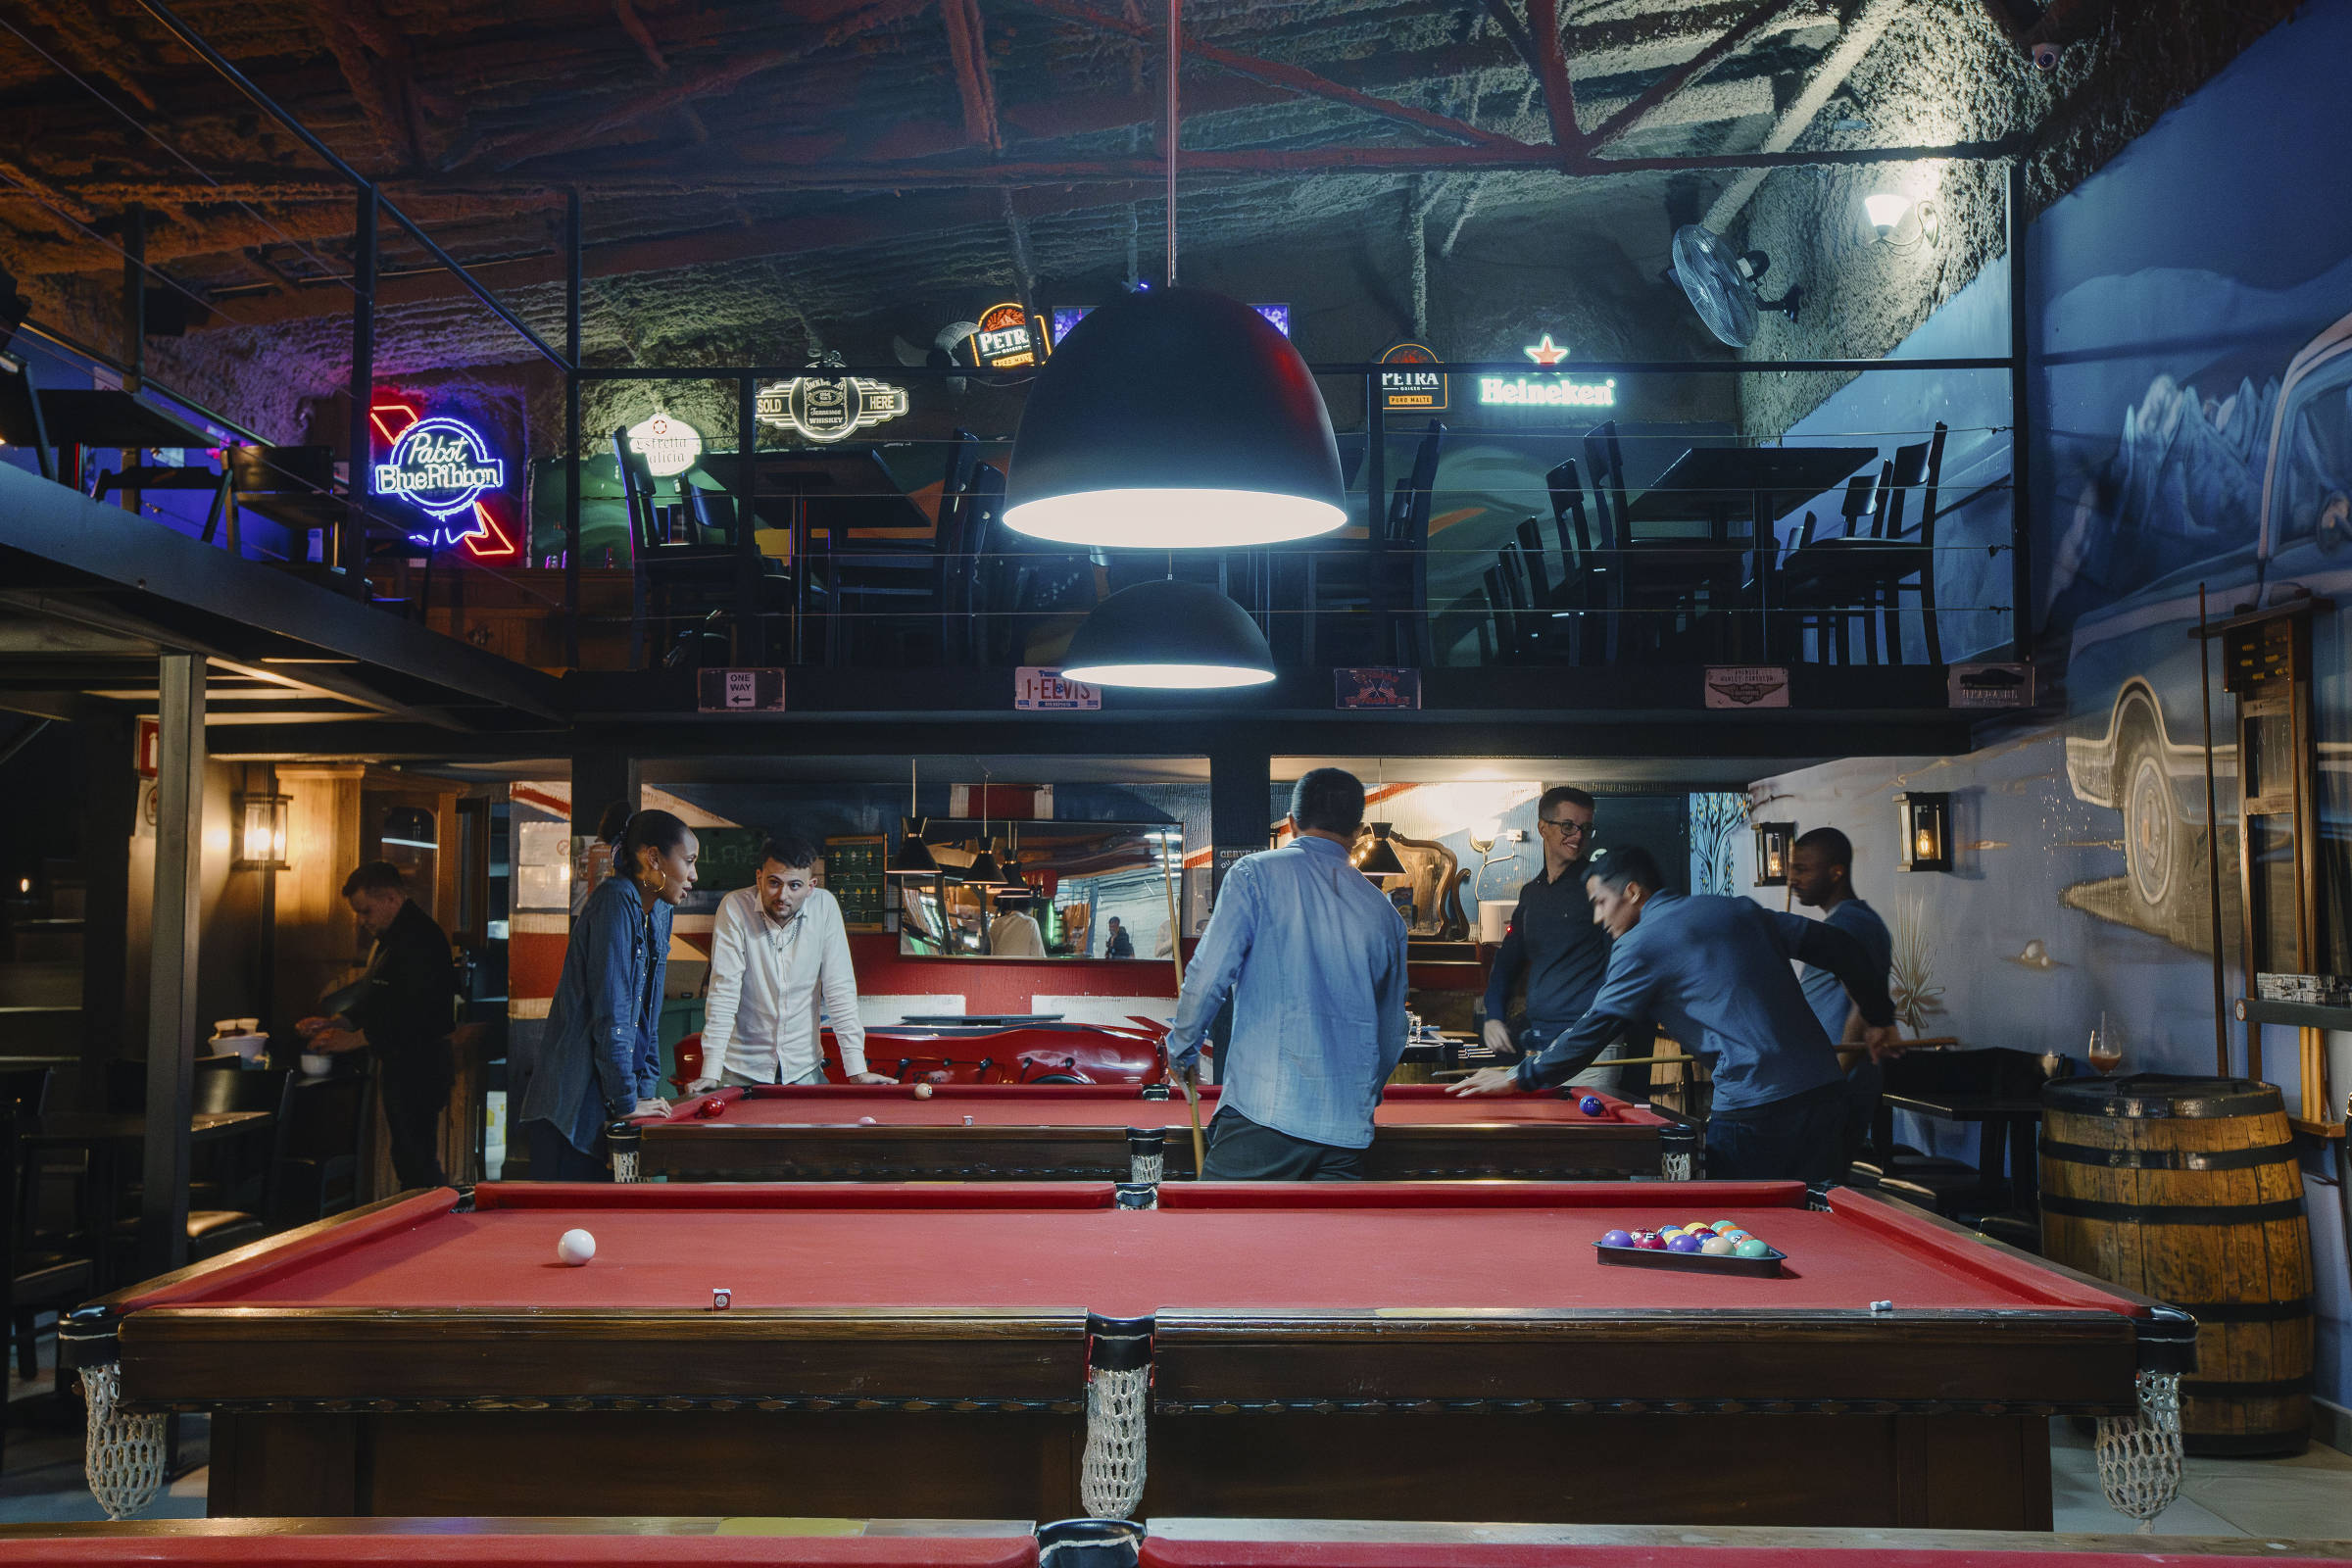 Conheça os 9 melhores bares de São Paulo para jogar sinuca com os